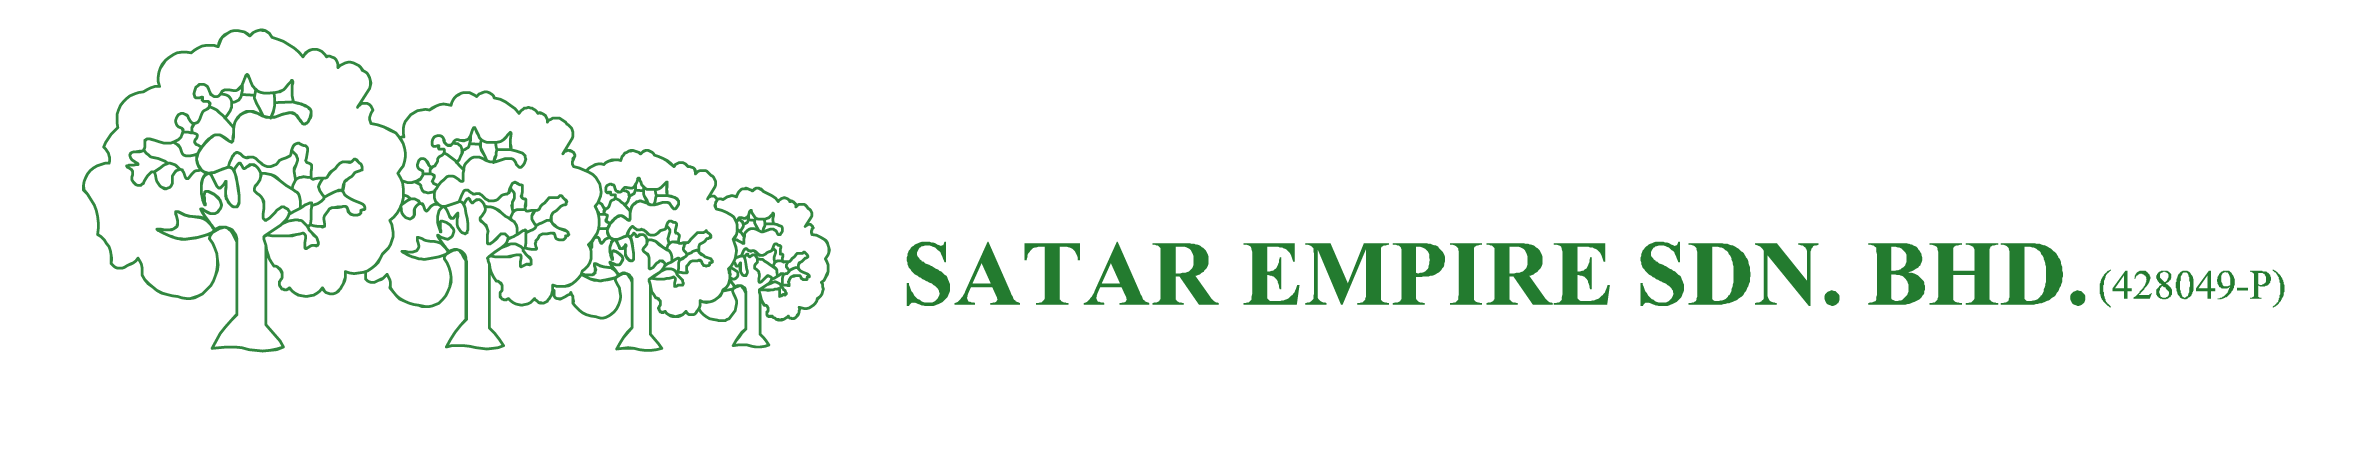 Satar Empire Sdn Bhd